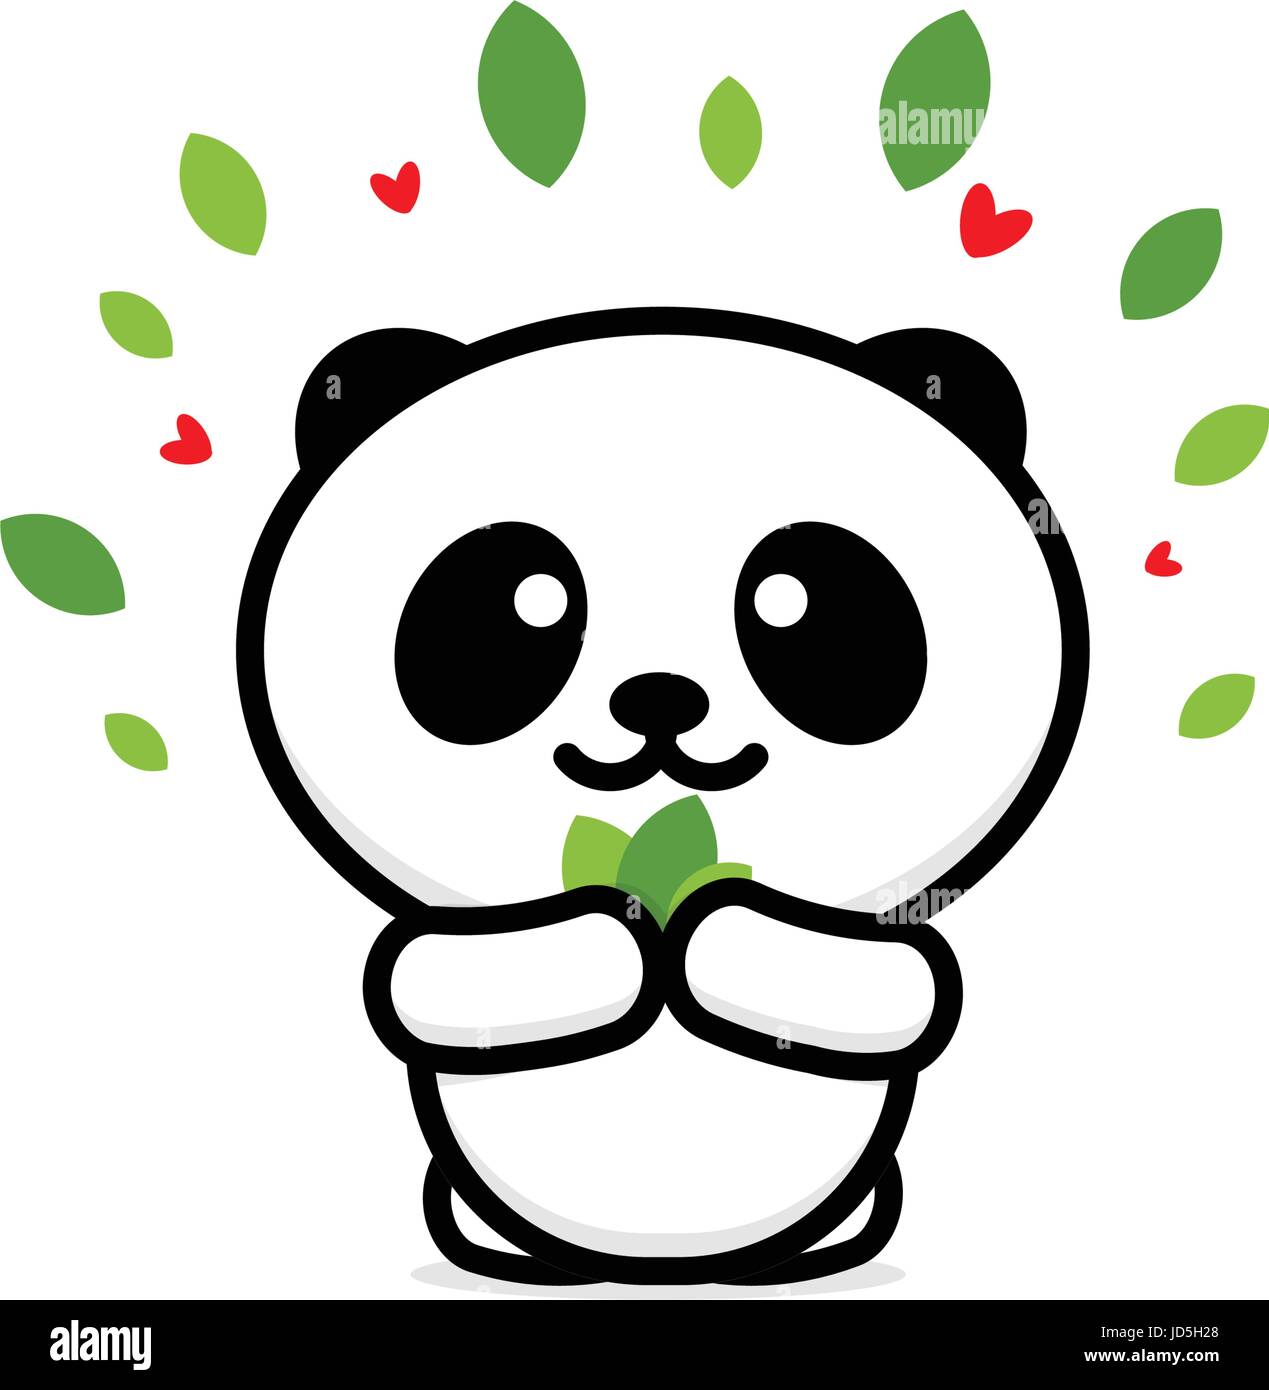 Grazioso Panda mangia lascia illustrazione vettoriale, baby orso logo, la nuova linea di design, arte cinese di Teddy bear colore nero segno, semplice immagine, immagine con anima Illustrazione Vettoriale